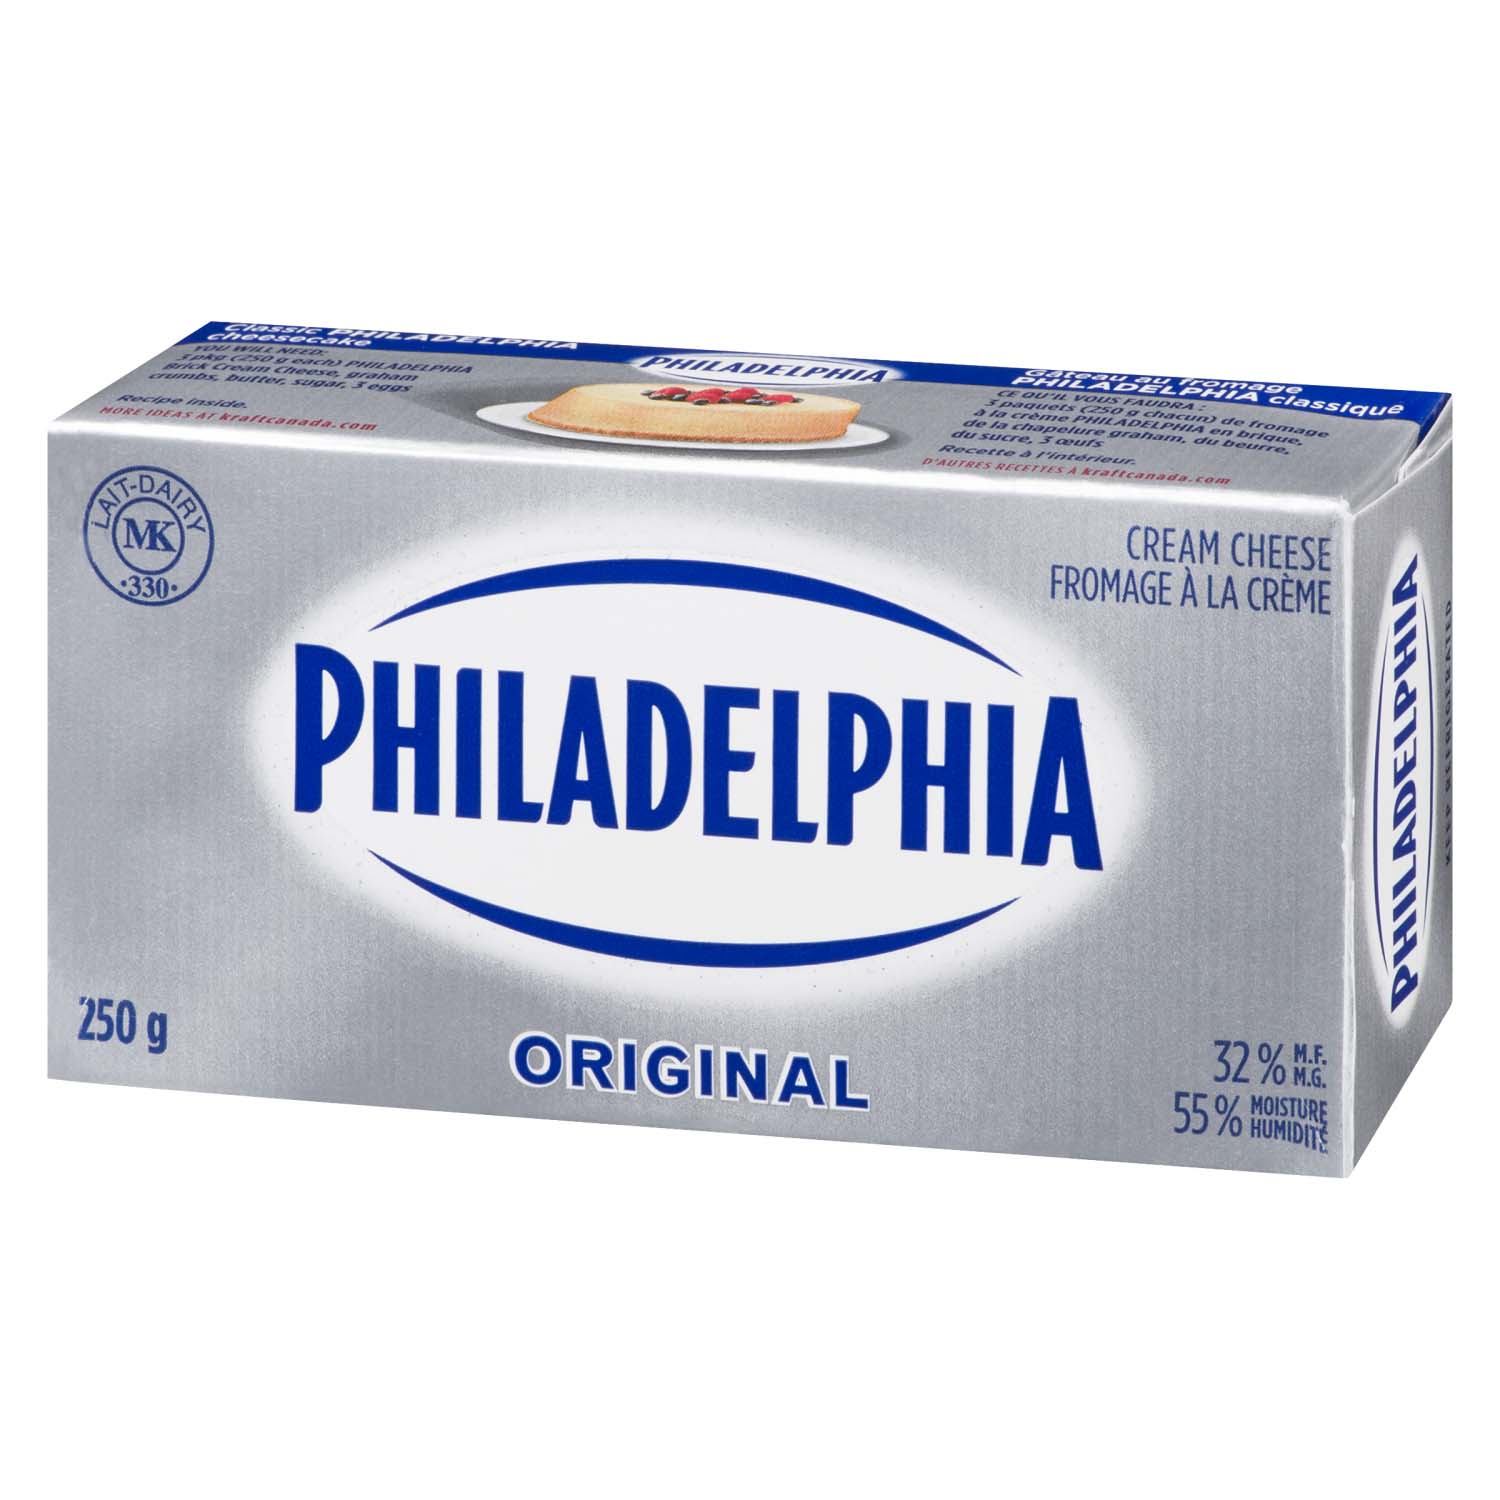 Philadelphia Original Brick Cream Cheese 